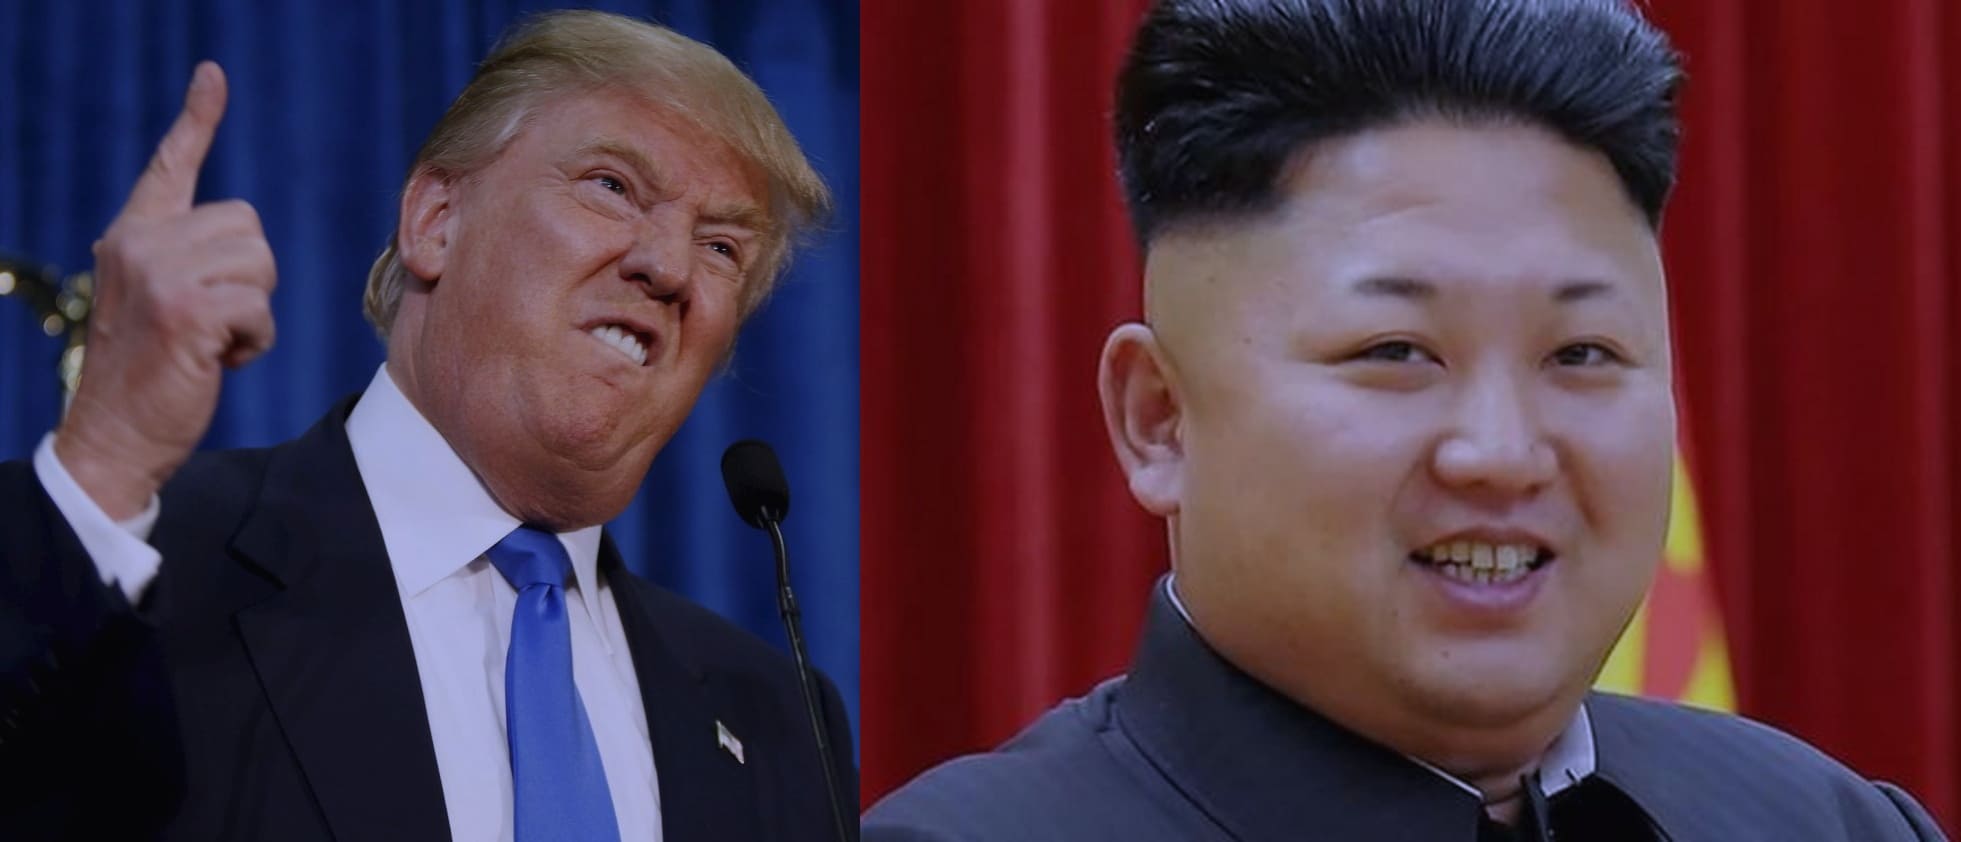 США и Северная Корея